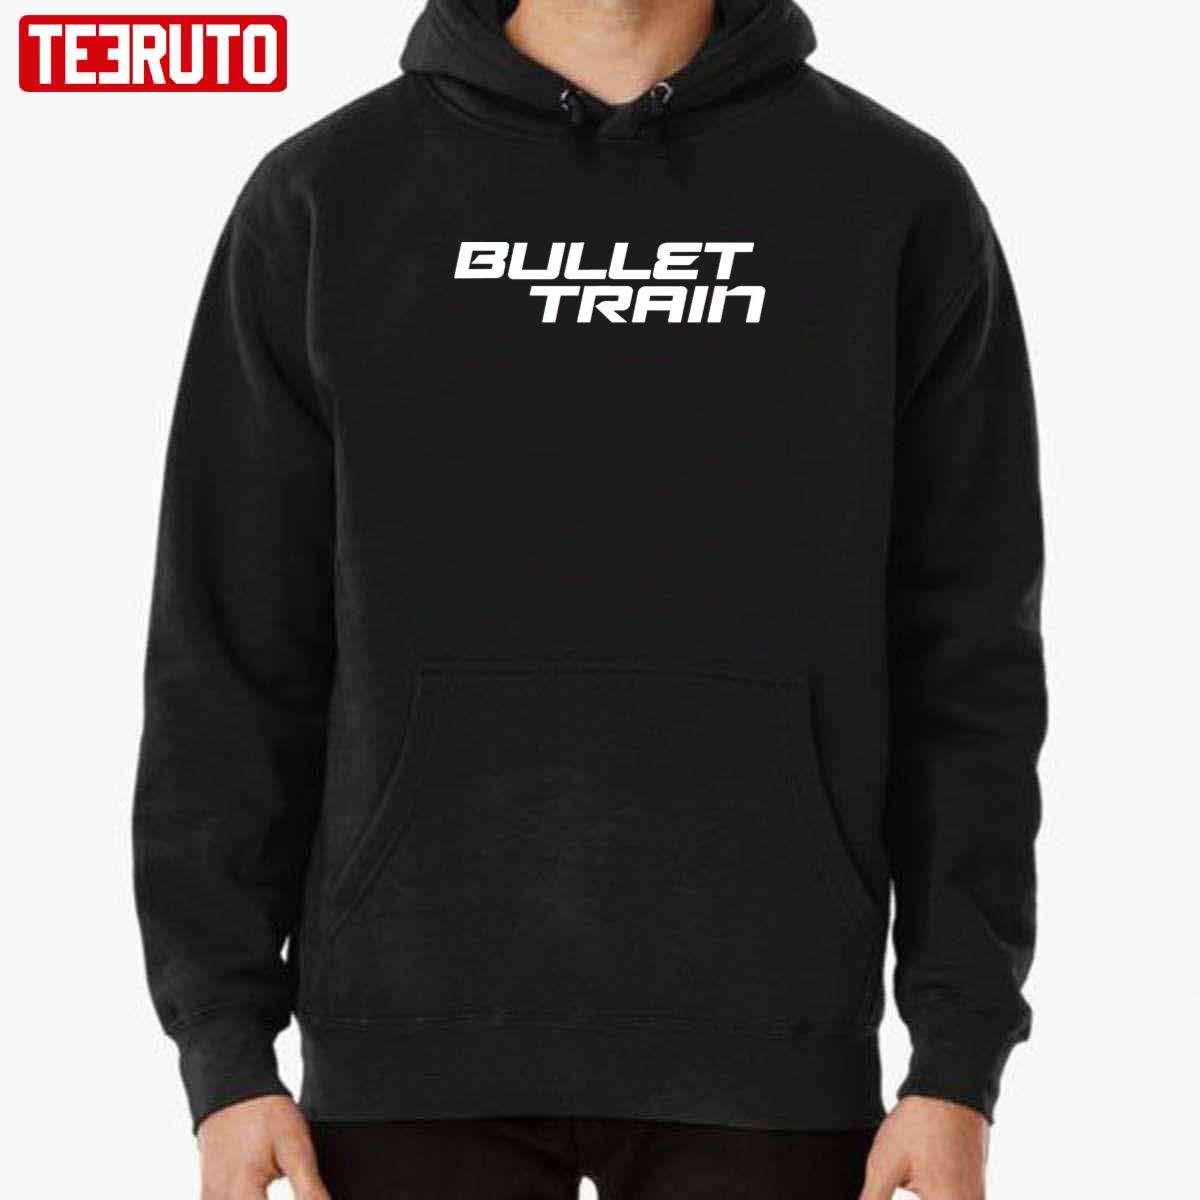 Action Bullet Train Unisex T-Shirt